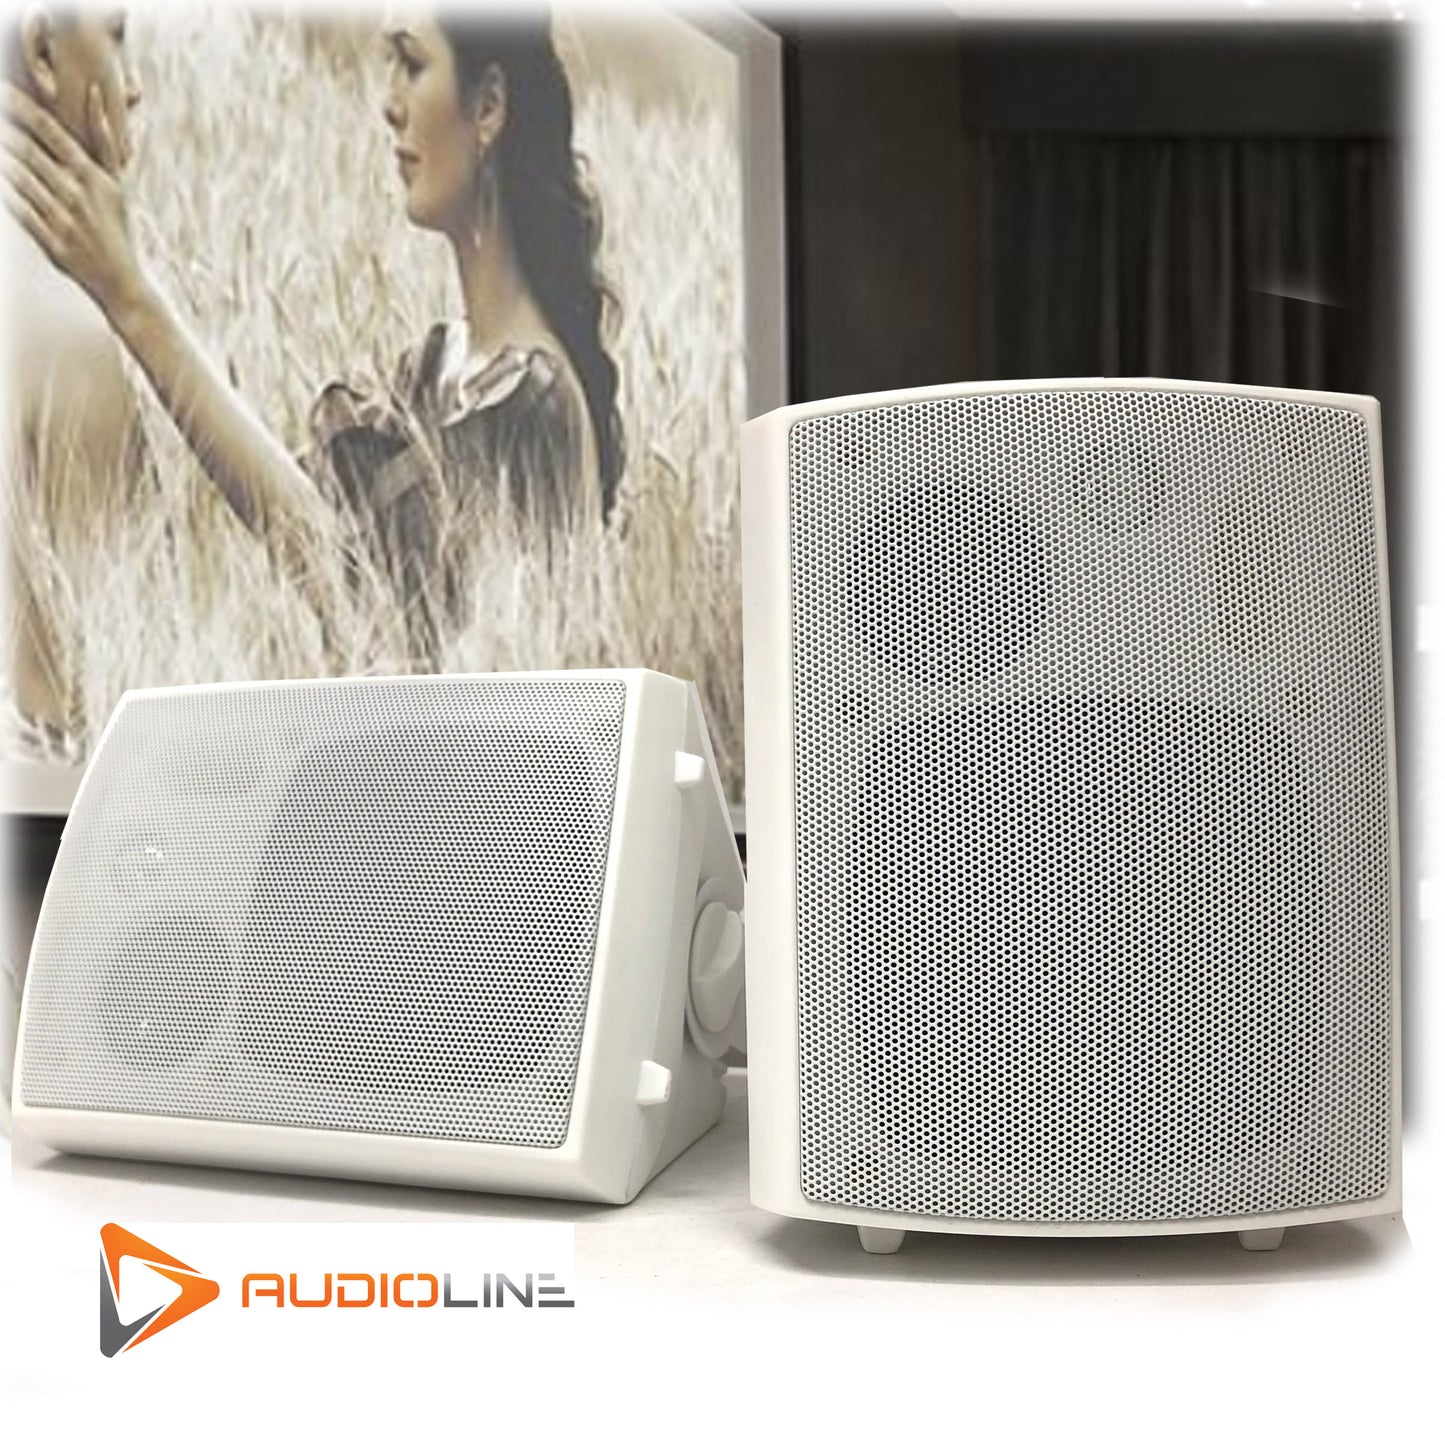 New Audioline Indoor Outdoor Speaker Pair 3-Way 4\" Bookshelf Wall / Ceiling Mount - image2